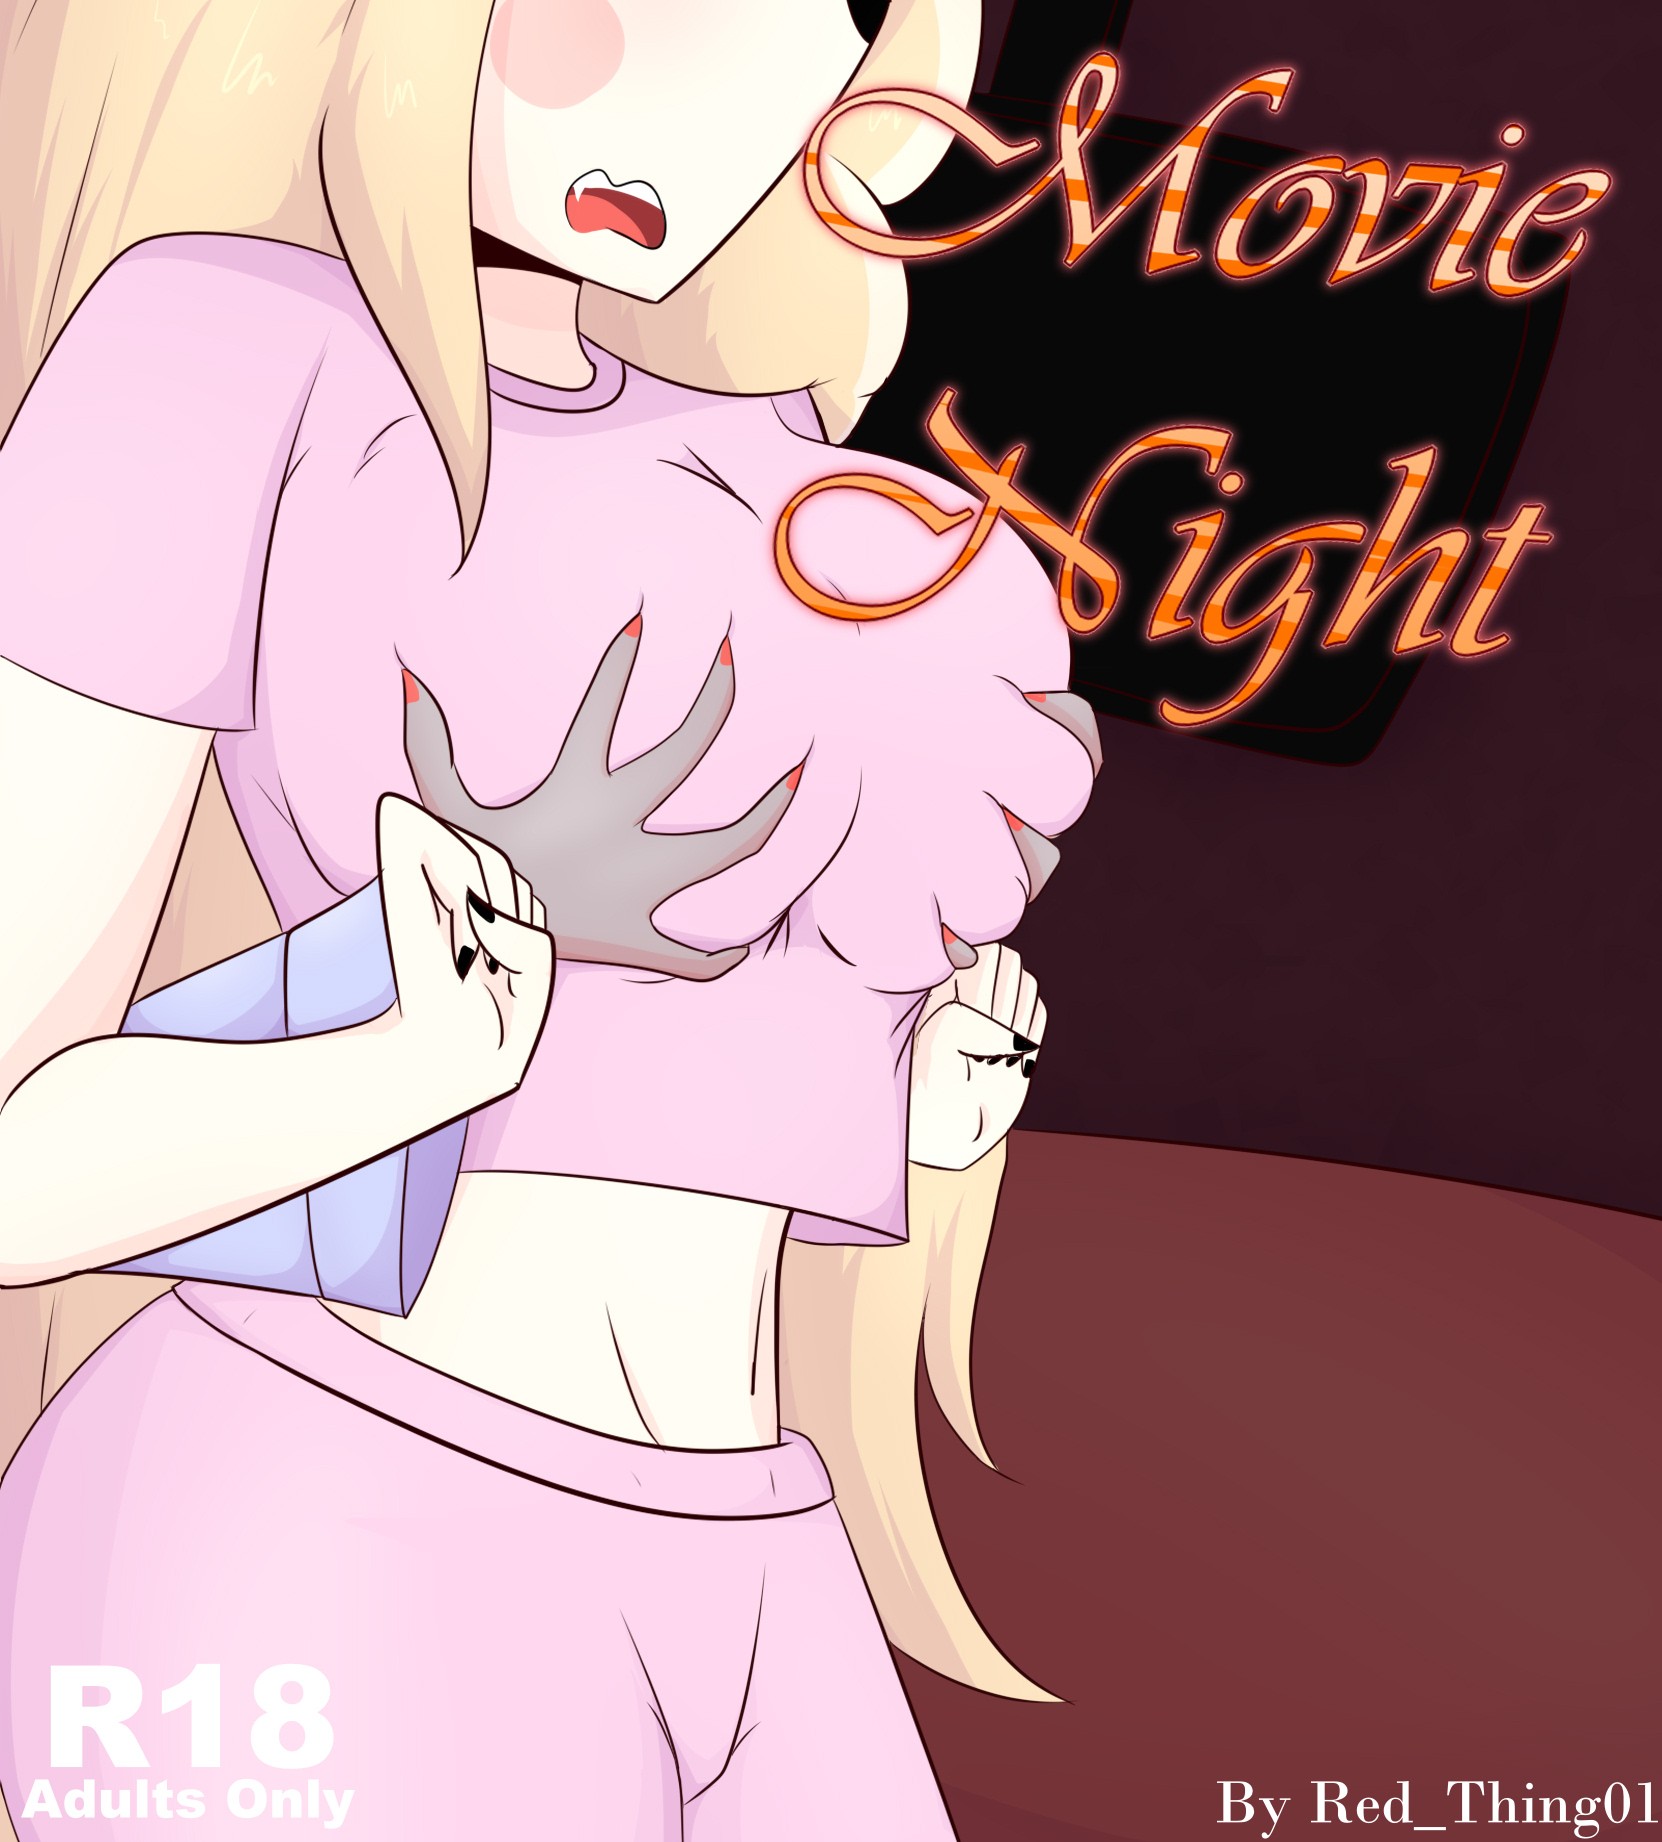 Movie Night Redthing 01